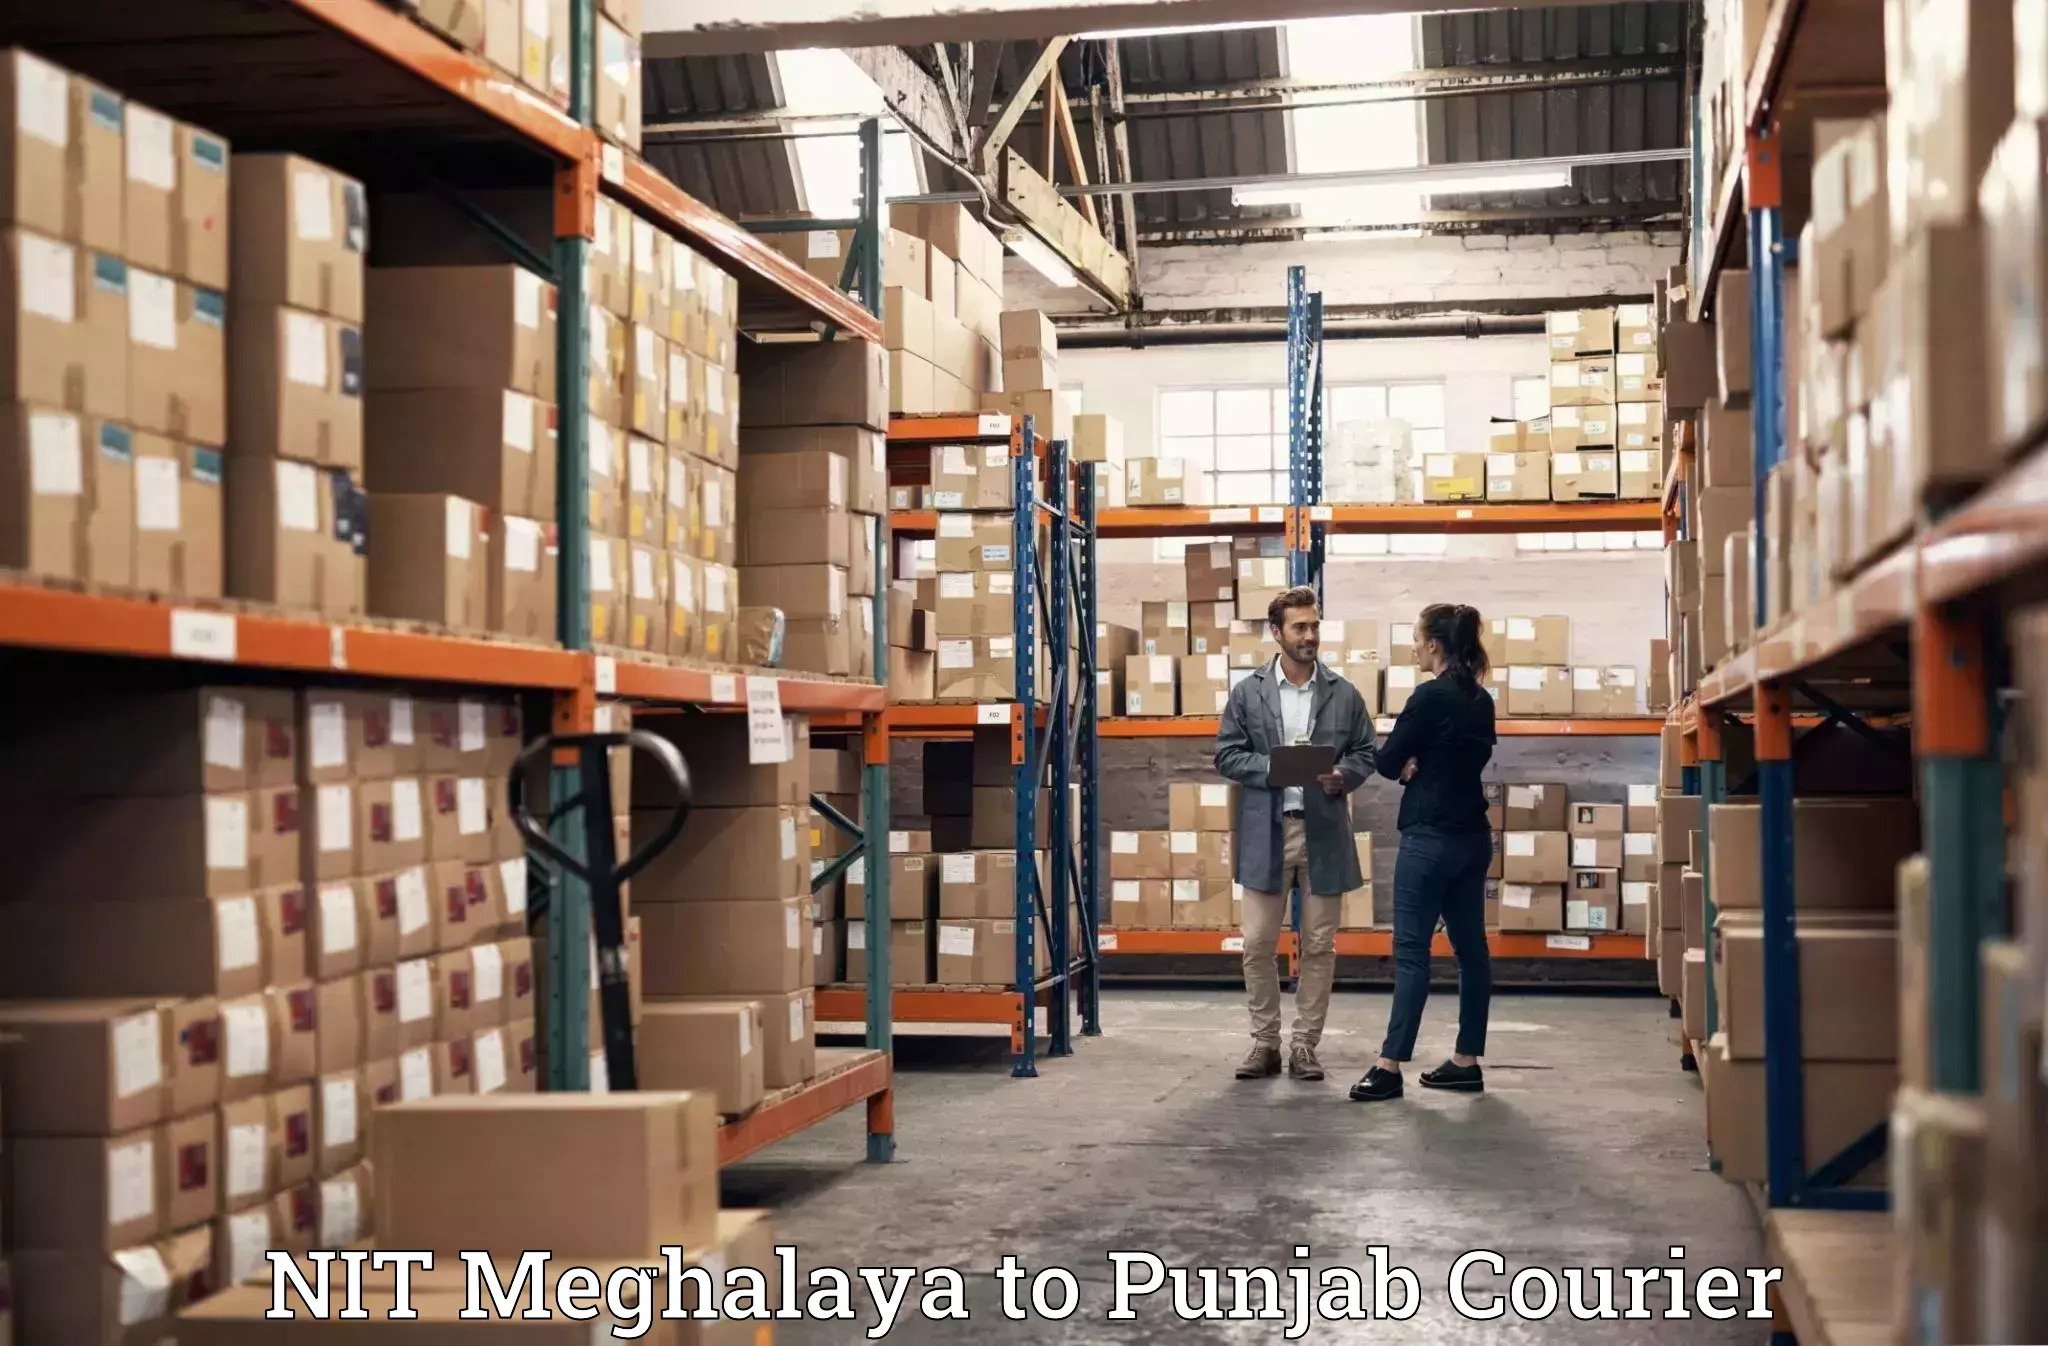 Furniture transport service NIT Meghalaya to Batala